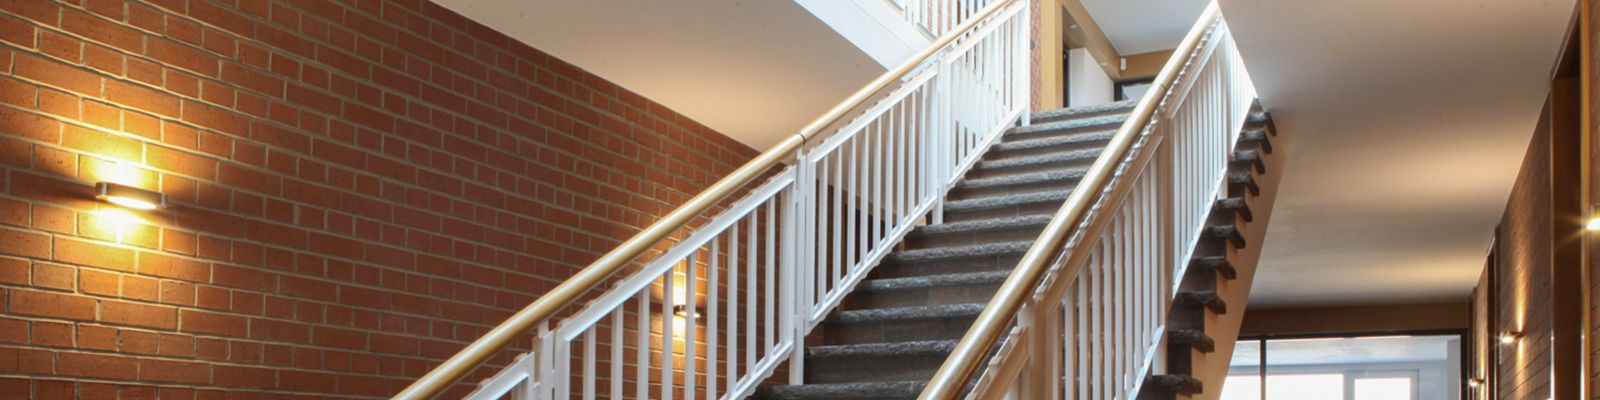 Foto: Treppe im Gebäude